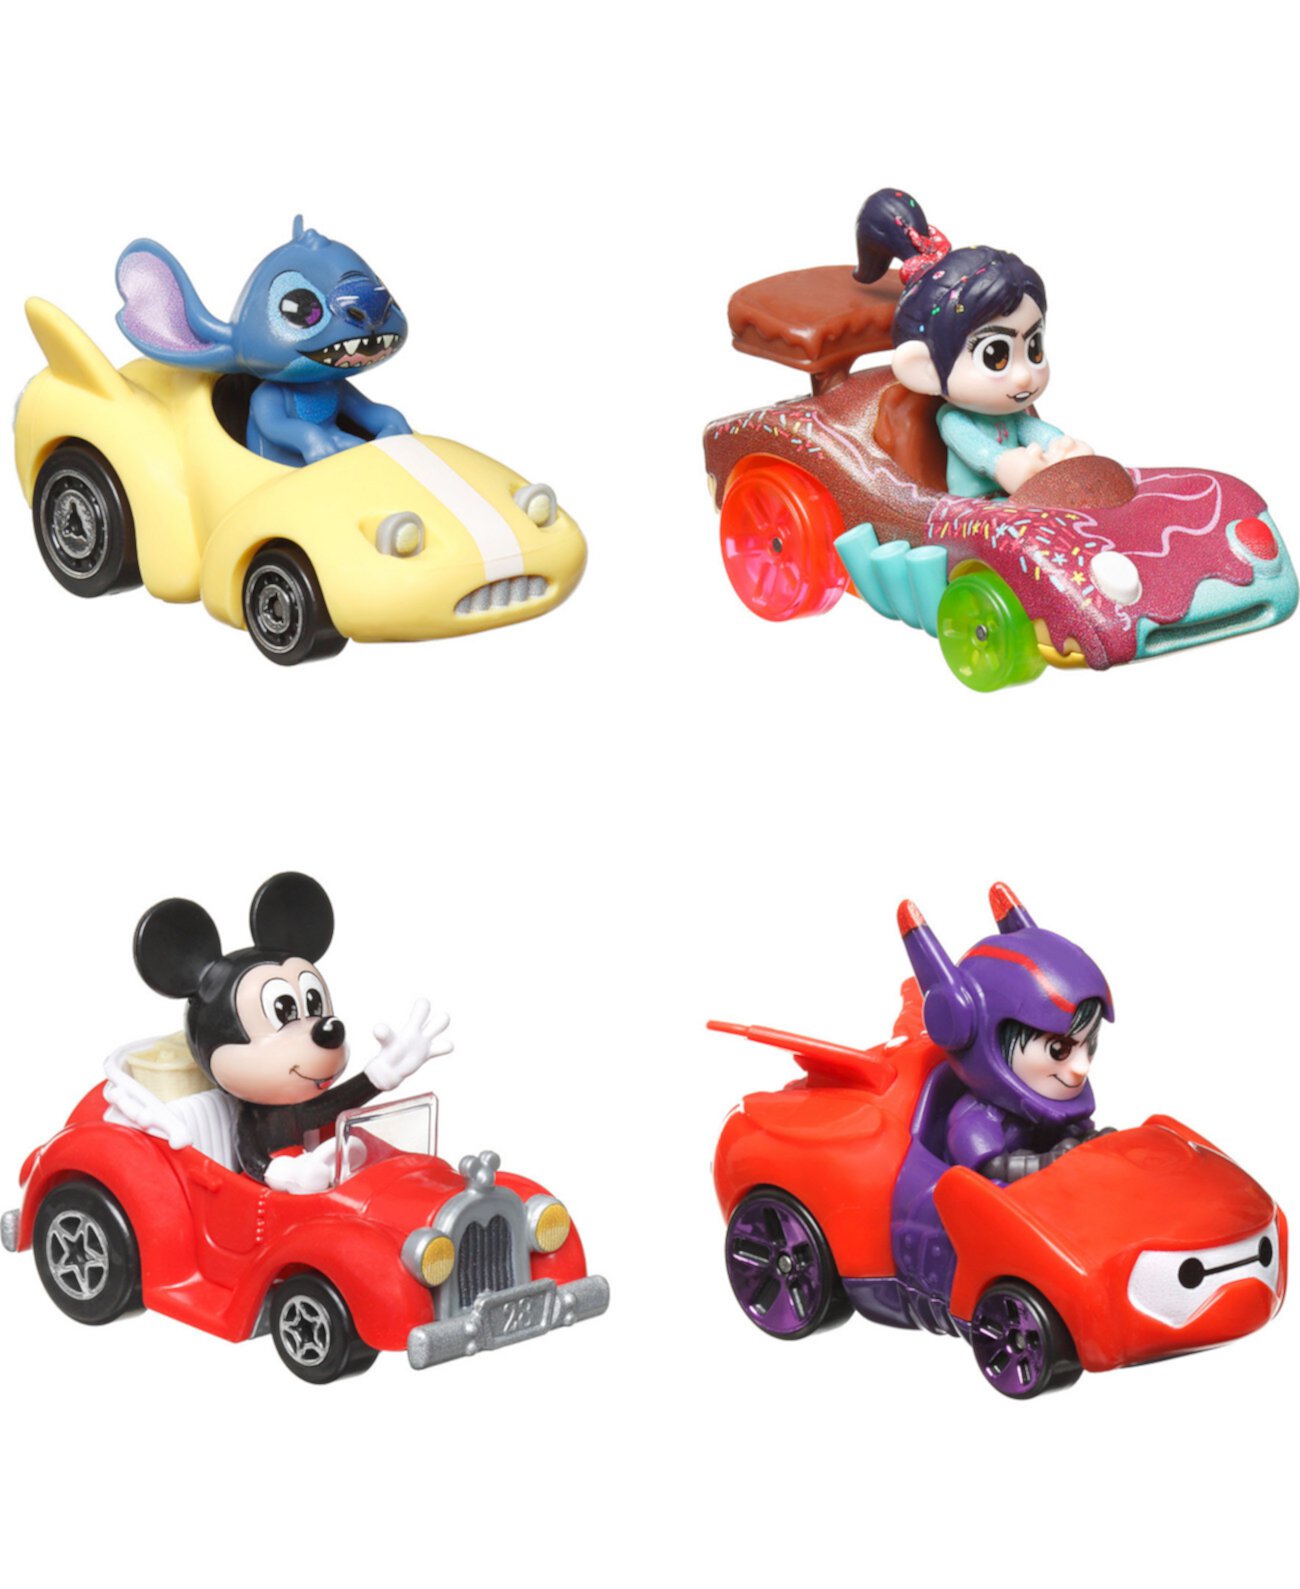 Набор RacerVerse из 4 литых машинок Hot Wheels с персонажами Диснея в роли водителей Hot Wheels